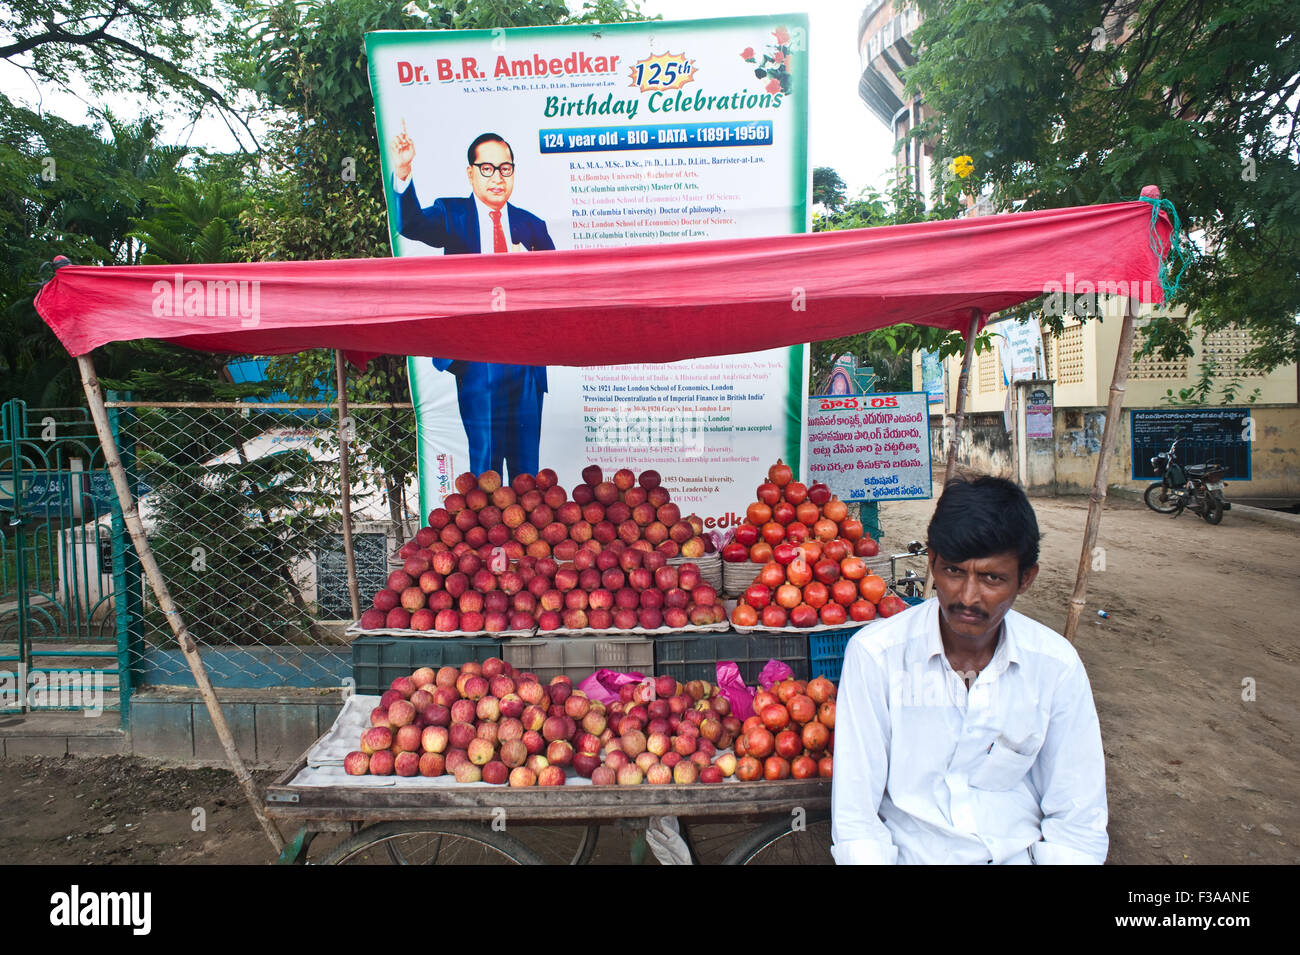 L'uomo vendita di mele e melograni davanti a un cartellone di commemorazione B.R. Ambedkar, un famoso uomo politico indiano leader. Foto Stock